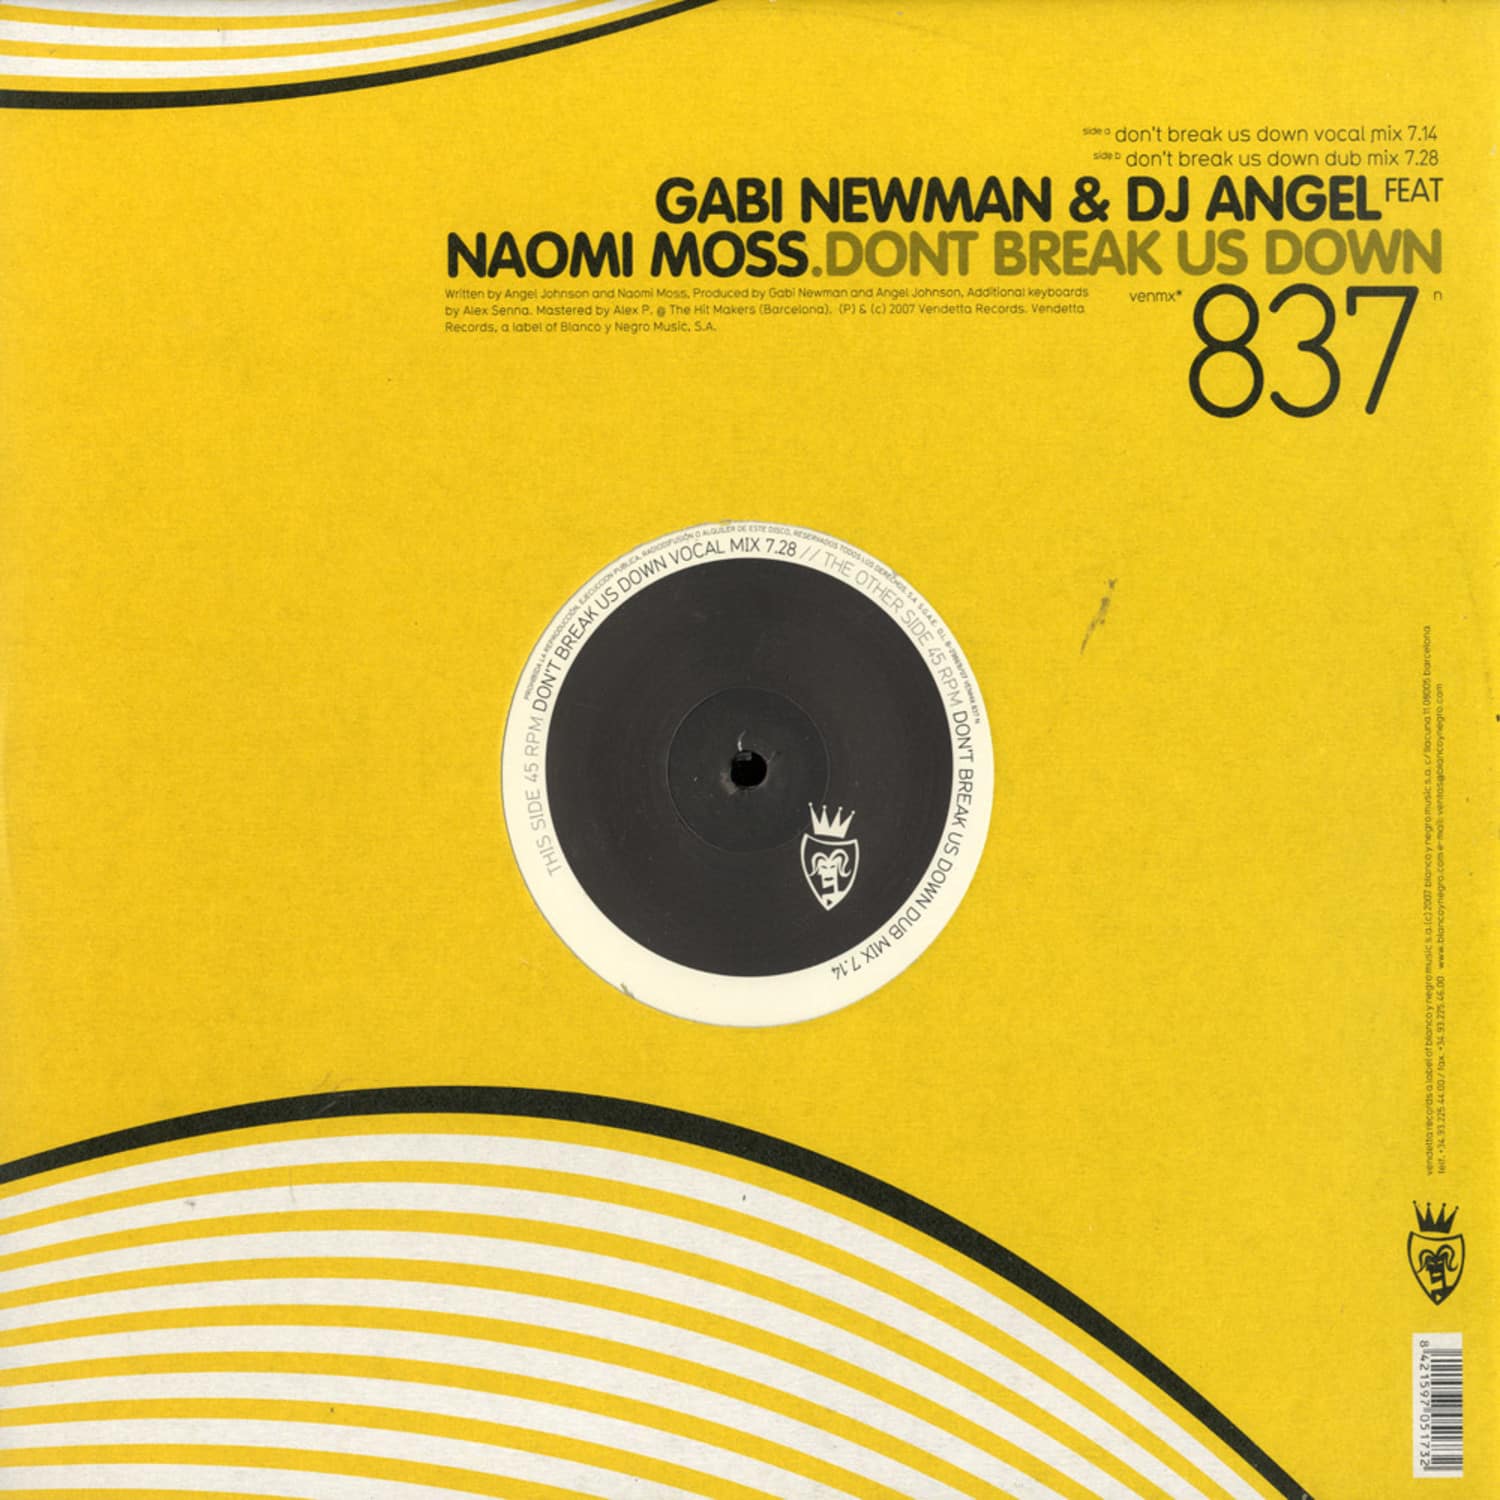 Gabi Newman & DJ Angel feat Naomi Moss - DONT BREAK US DOWN